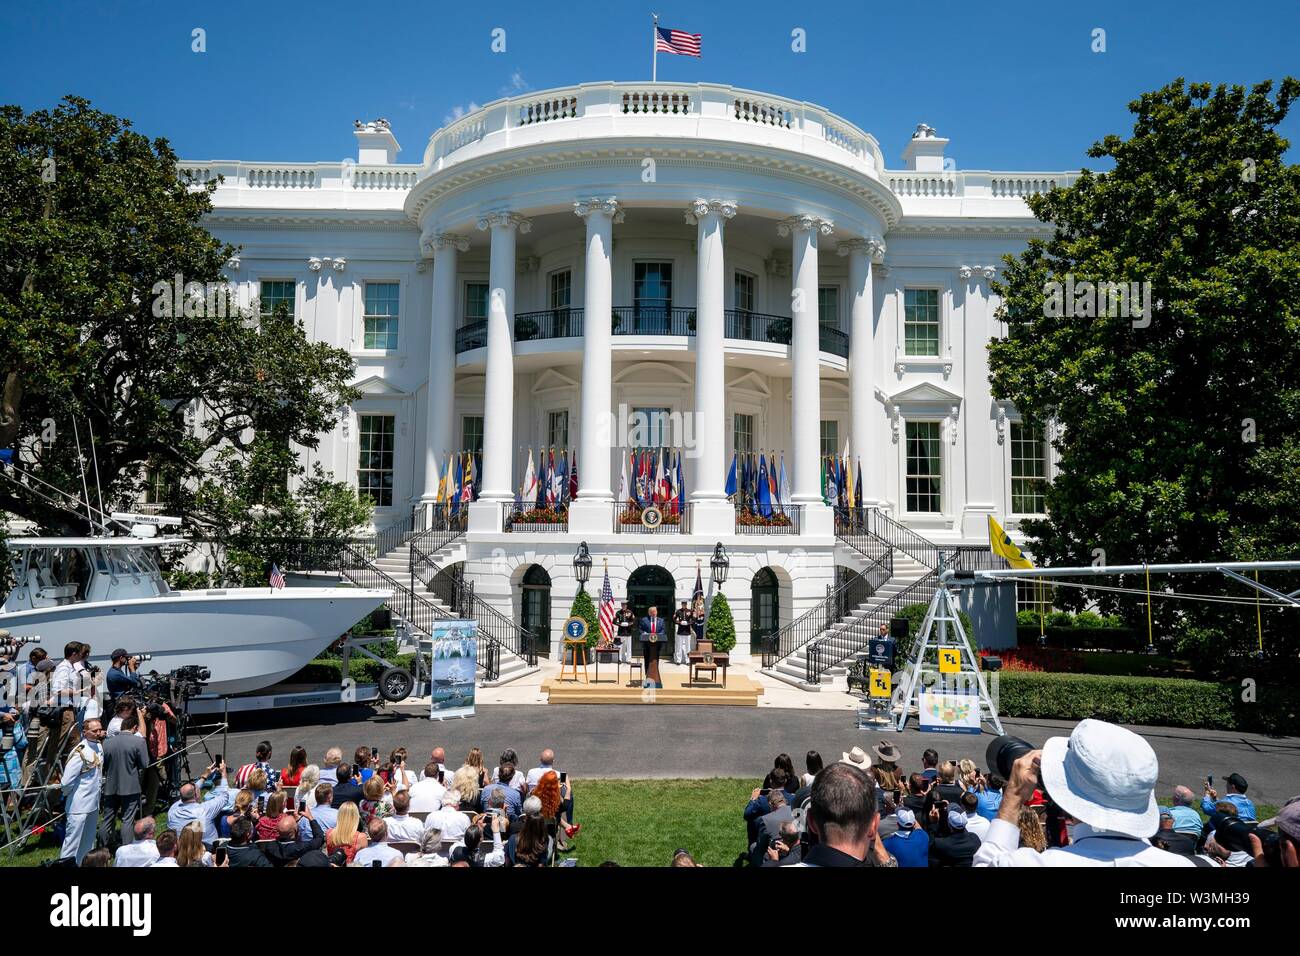 Président américain Donald Trump, prononce une allocution lors de la présentation du produit fabriqué en Amérique sur la pelouse Sud de la Maison Blanche le 15 juillet 2019 à Washington, DC. Banque D'Images